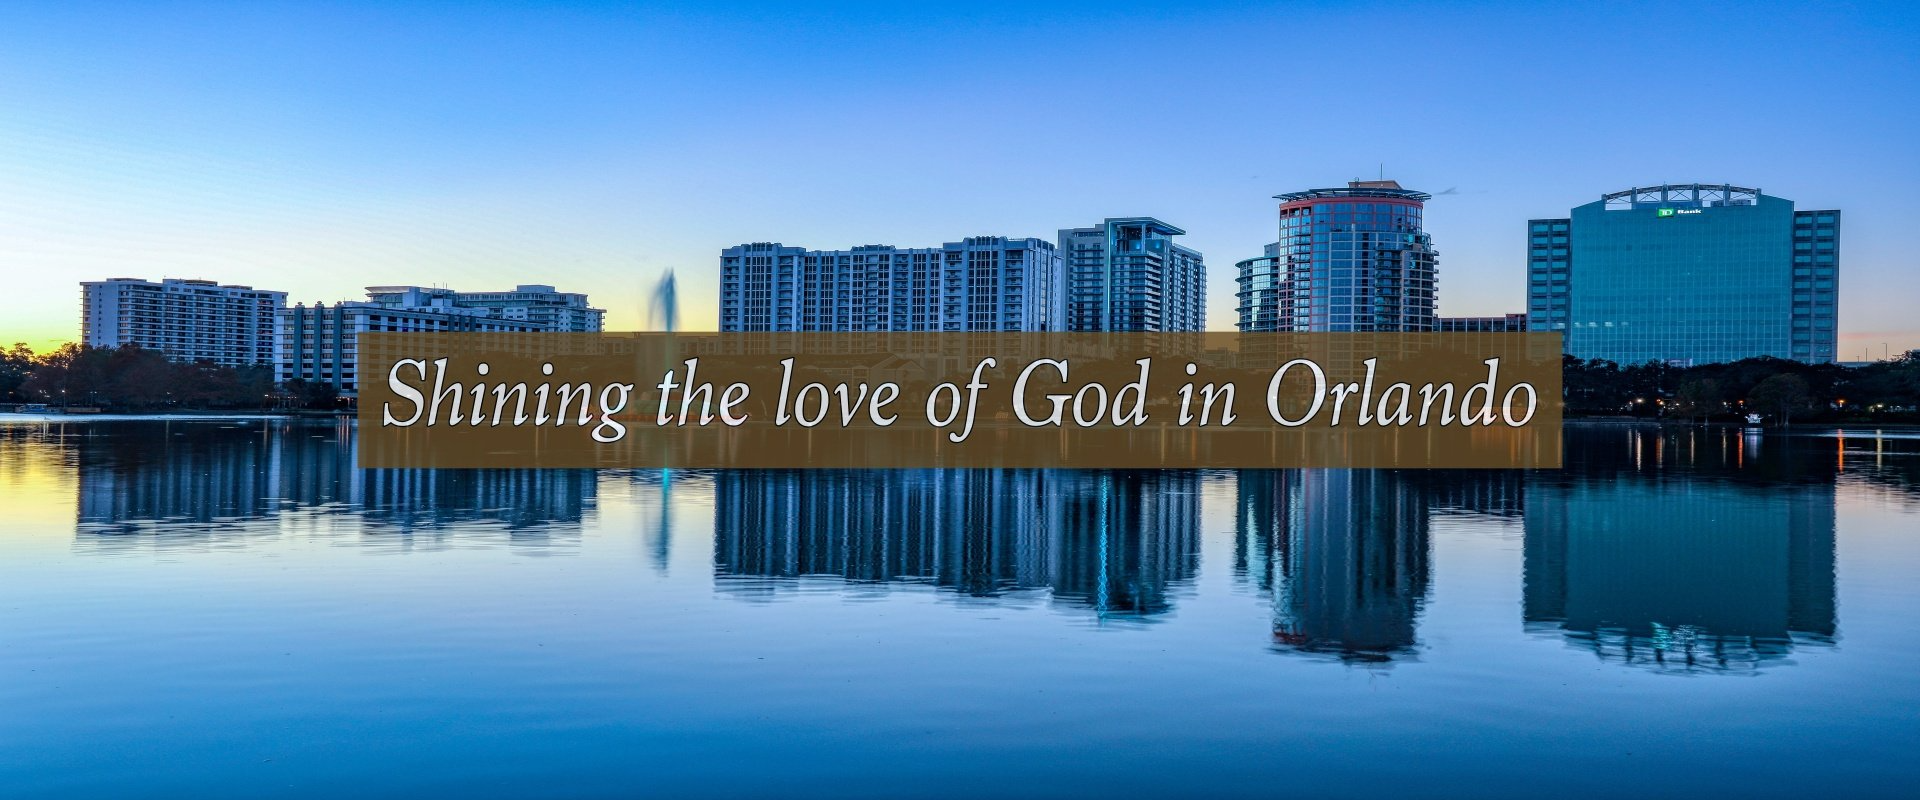 Shining love of God in Orlando